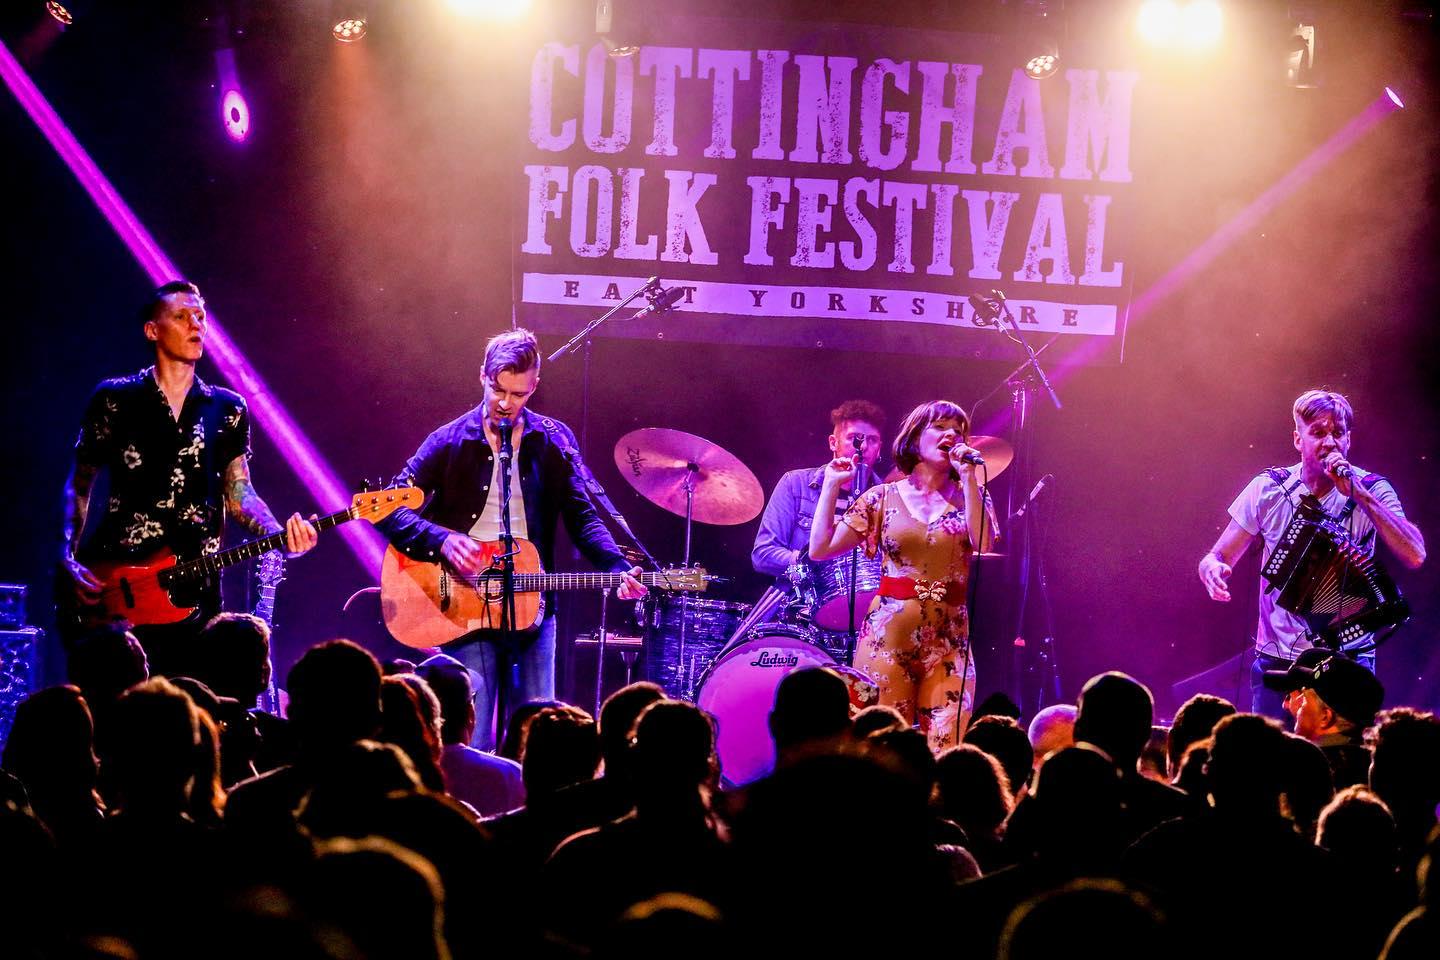 Cottingham Folk Festival